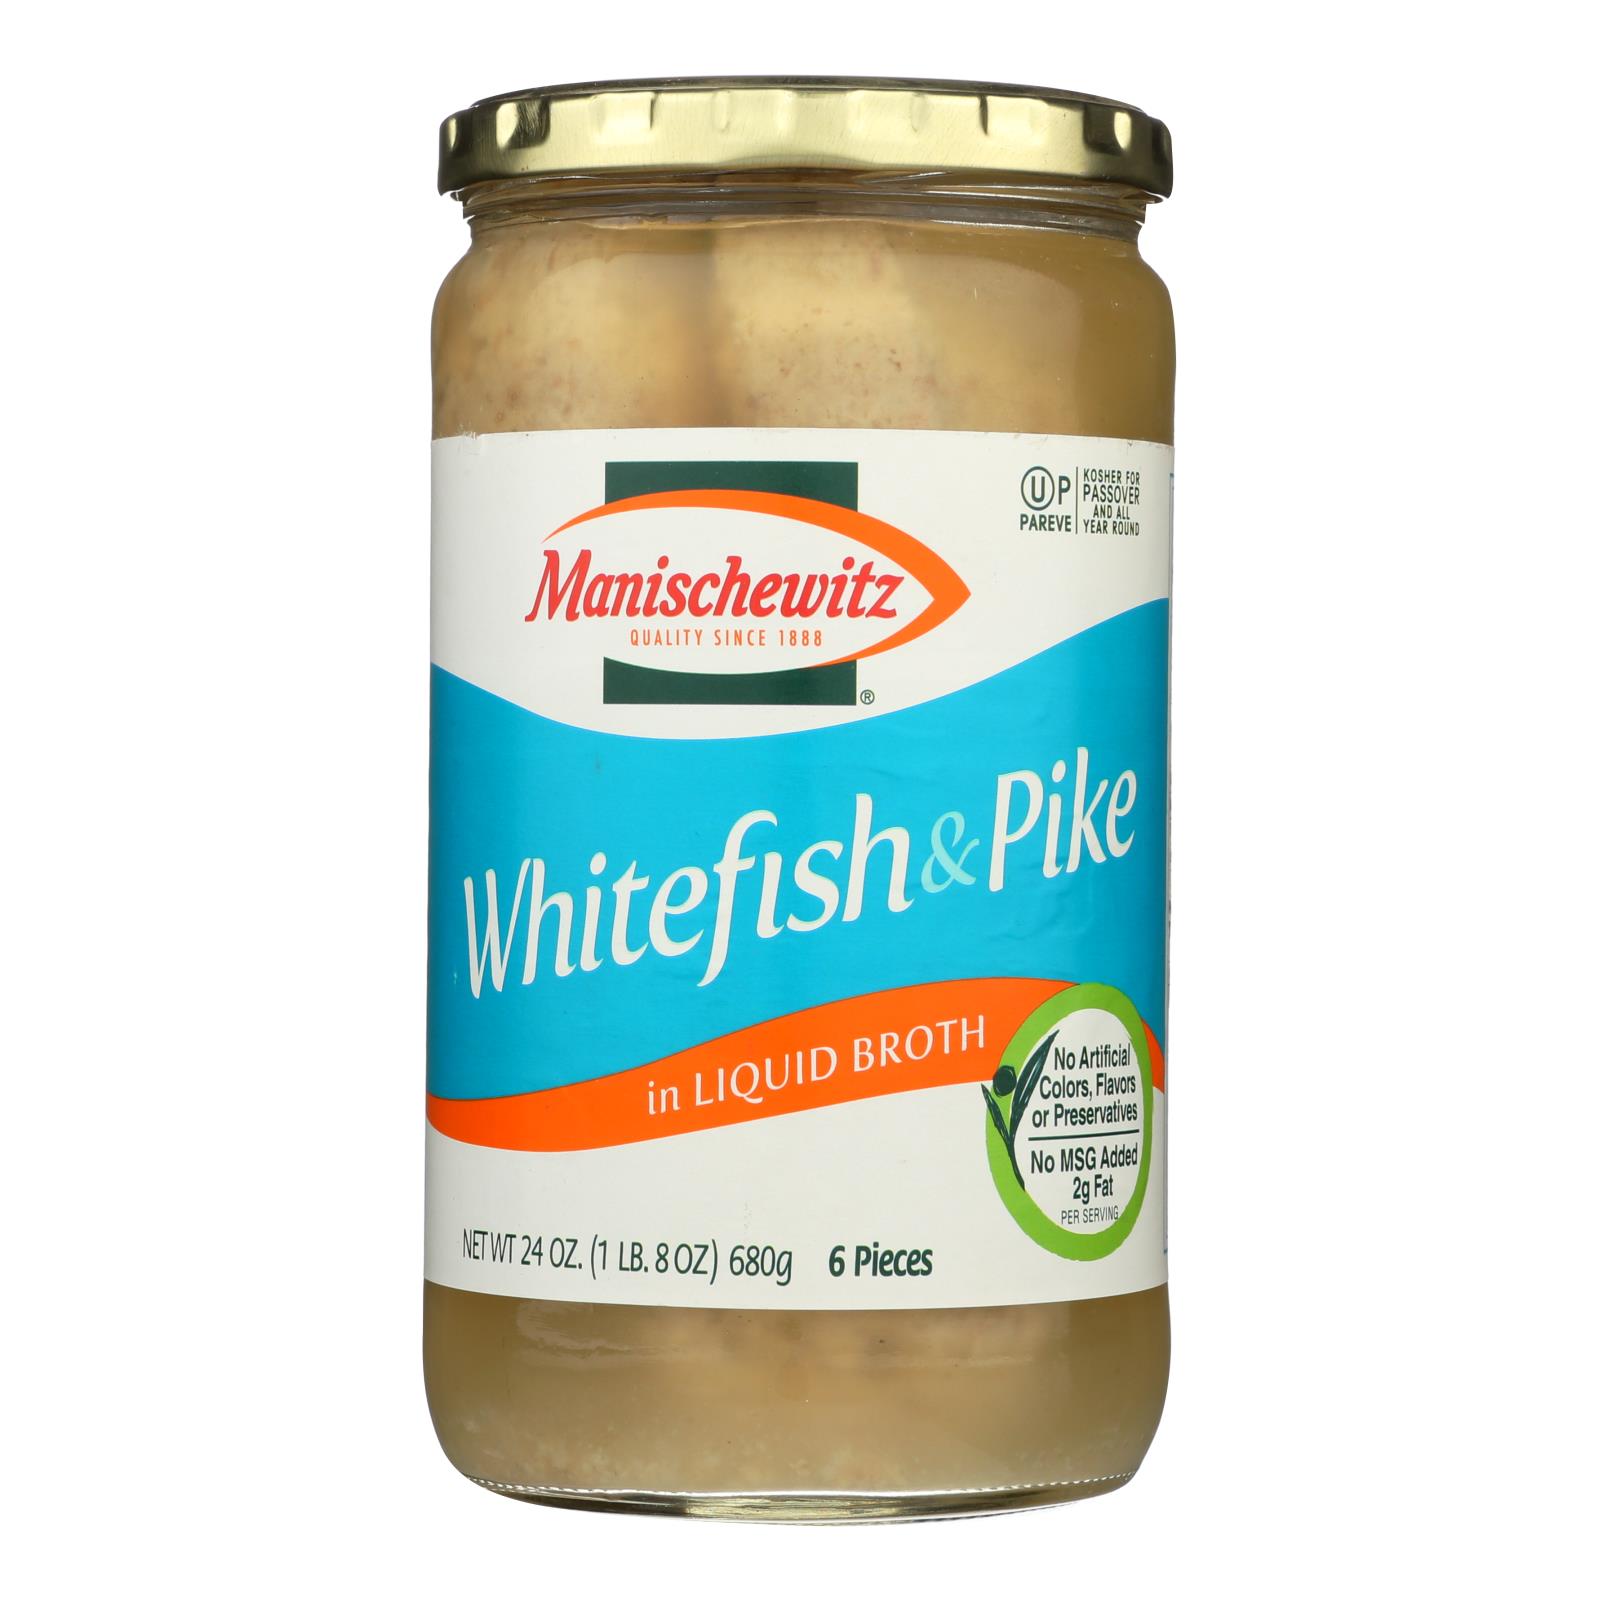 Manischewitz Whitefish & Pike - 12개 묶음상품 - 24 OZ